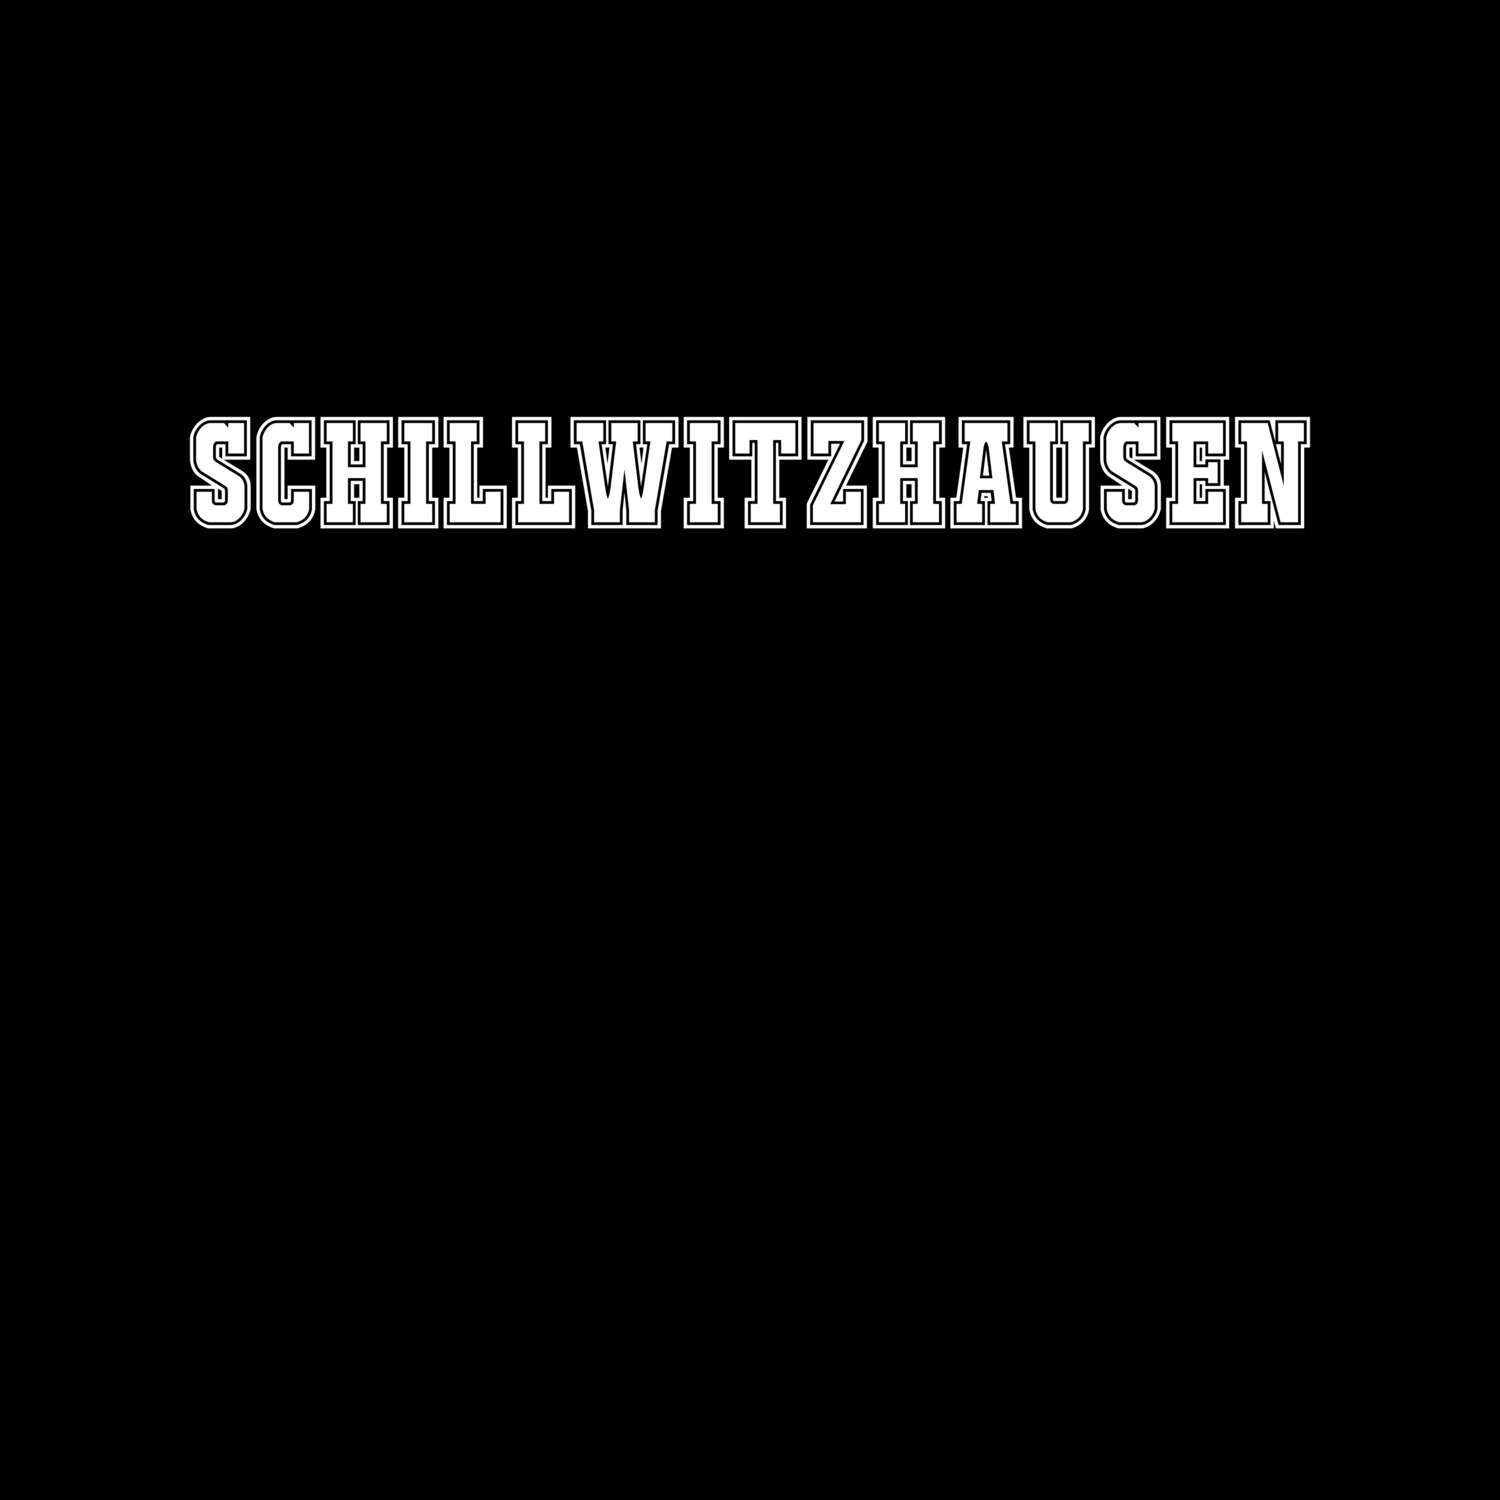 Schillwitzhausen T-Shirt »Classic«